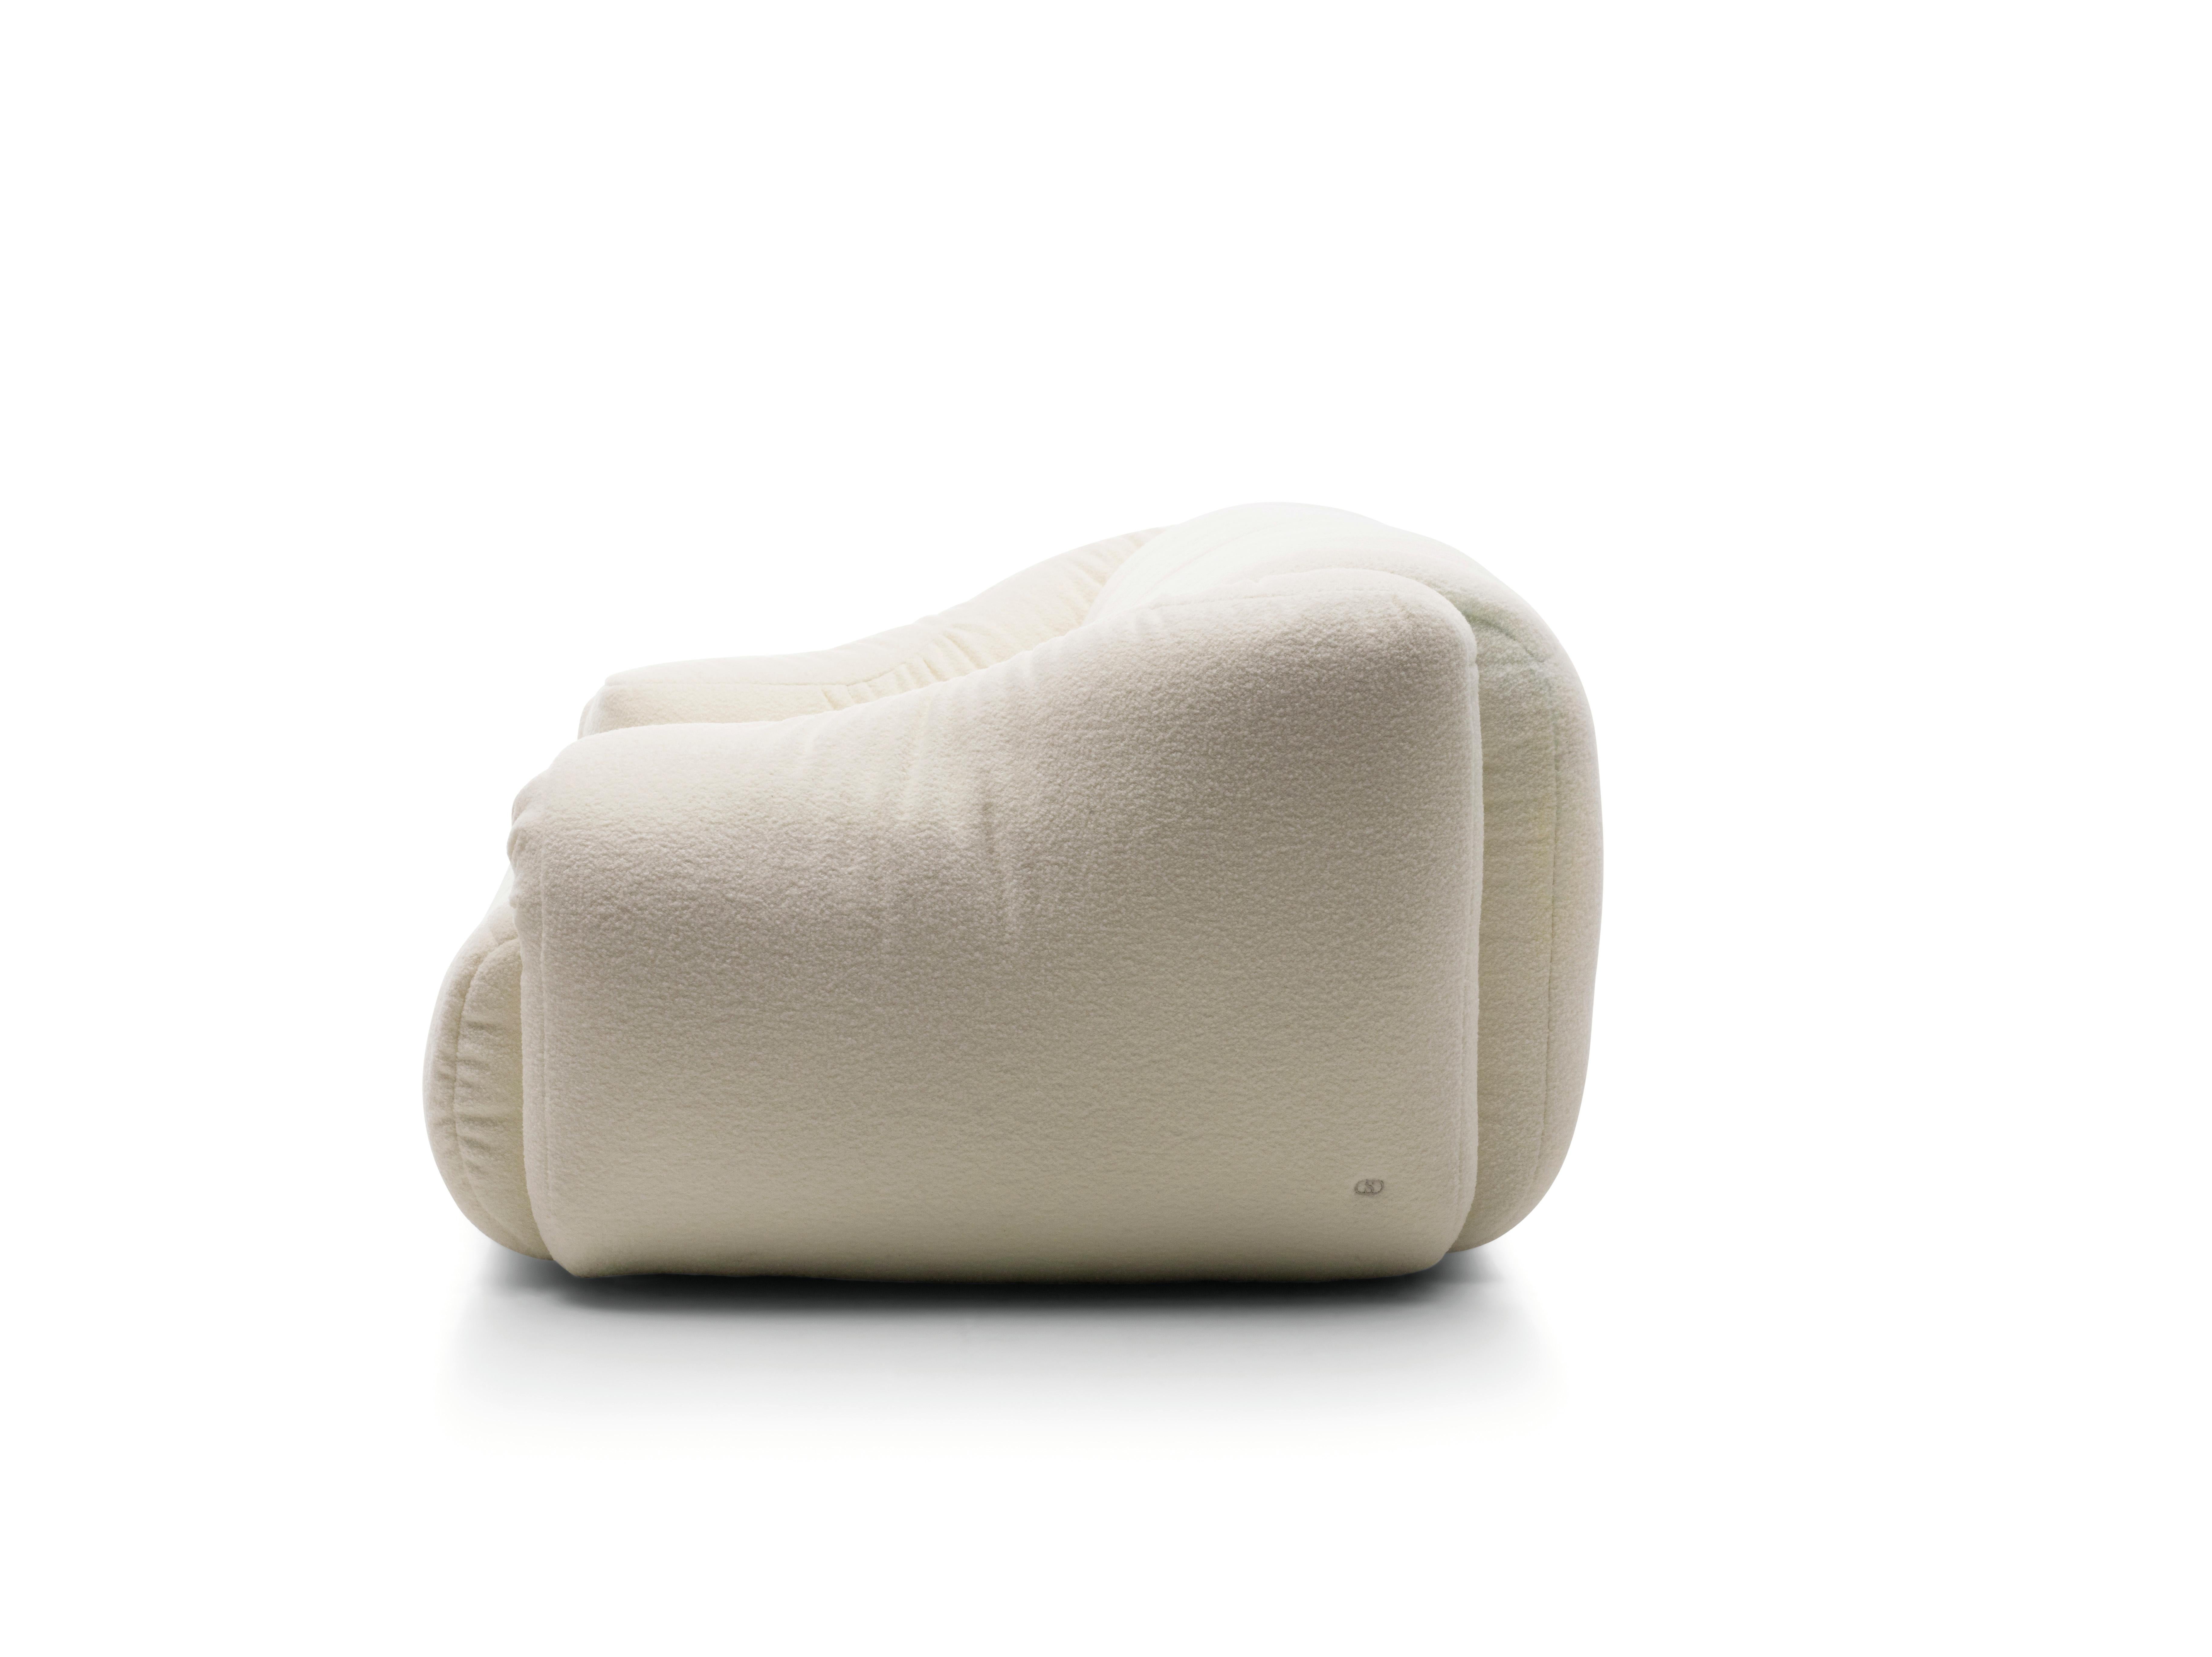 Unendlicher Sitzkomfort 

Design und Komfort gehen bei der DS-705 von Philippe Malouin auf sehr ansprechende Weise Hand in Hand. Die Art und Weise, wie die Armlehnen lässig nach innen geklappt werden, ist ein sehr mutiges Design-Statement. Sie